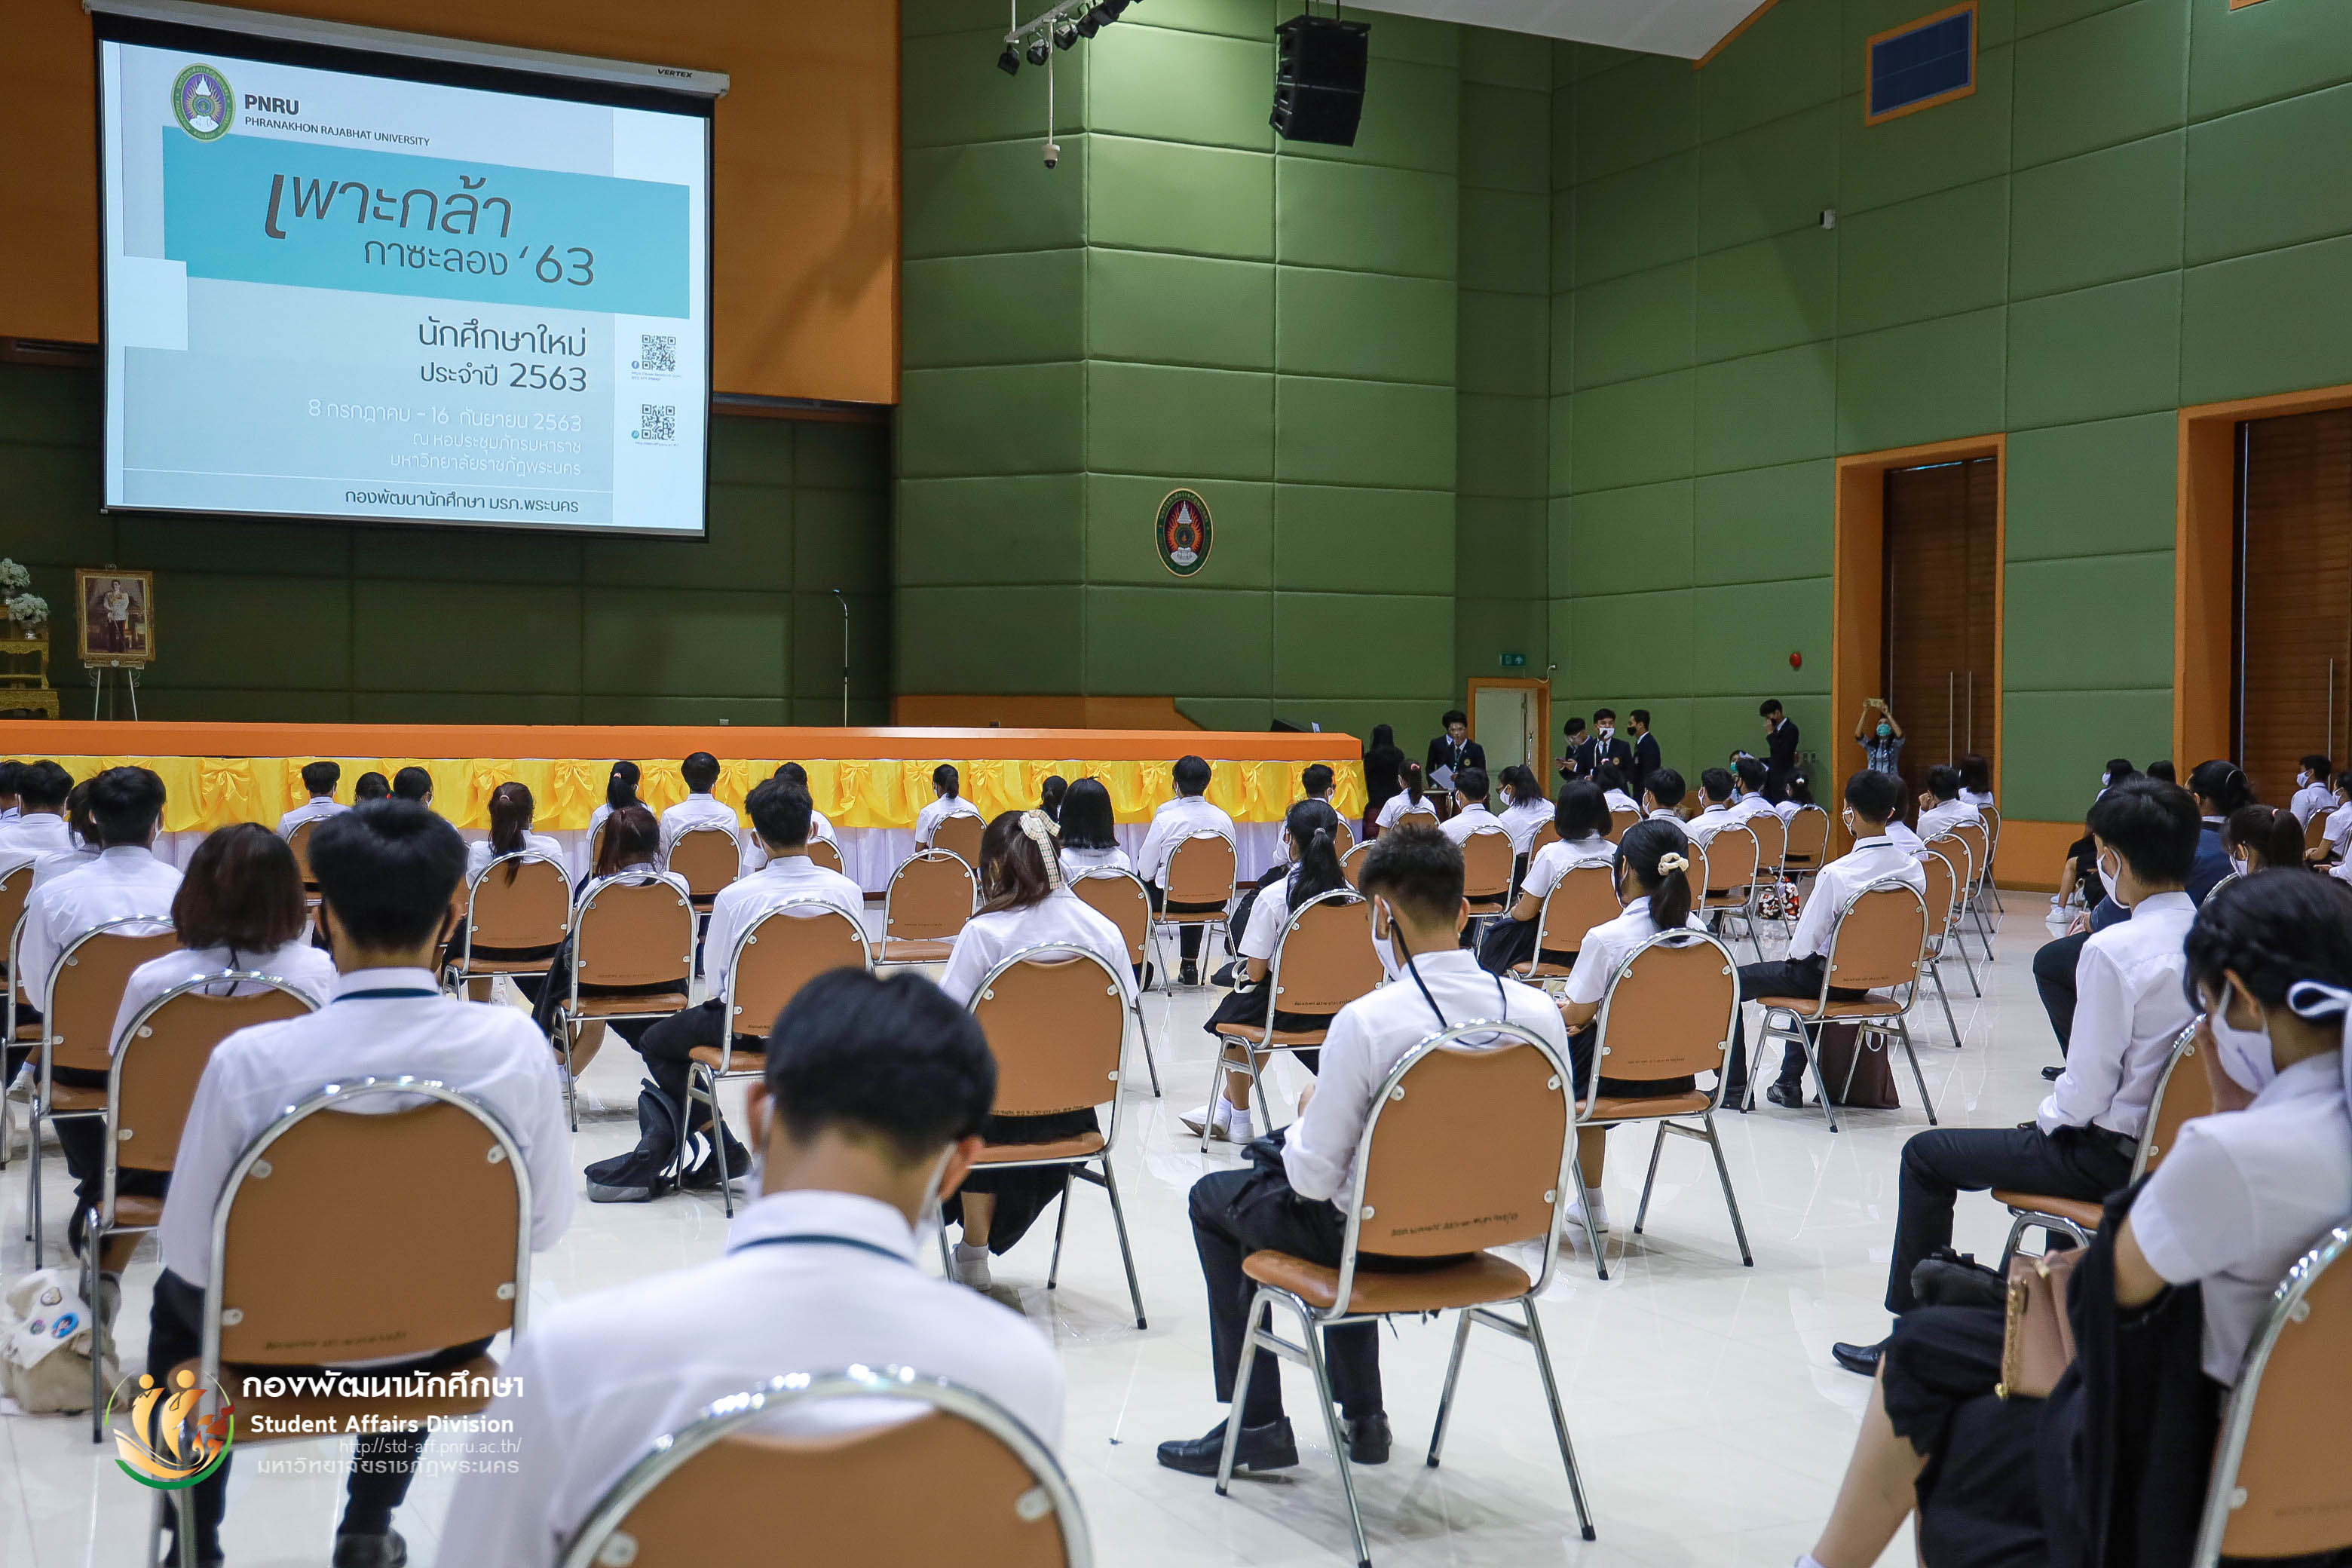 15 กรกฎาคม 2563 กองพัฒนานักศึกษา มหาวิทยาลัยราชภัฏพระนคร จัดให้มีการจัดกิจกรรมเพาะกล้ากาซะลอง 63 รุ่นที่ 2 ประจำปีการศึกษา 2563 ณ หอประชุมภัทรมหาราช